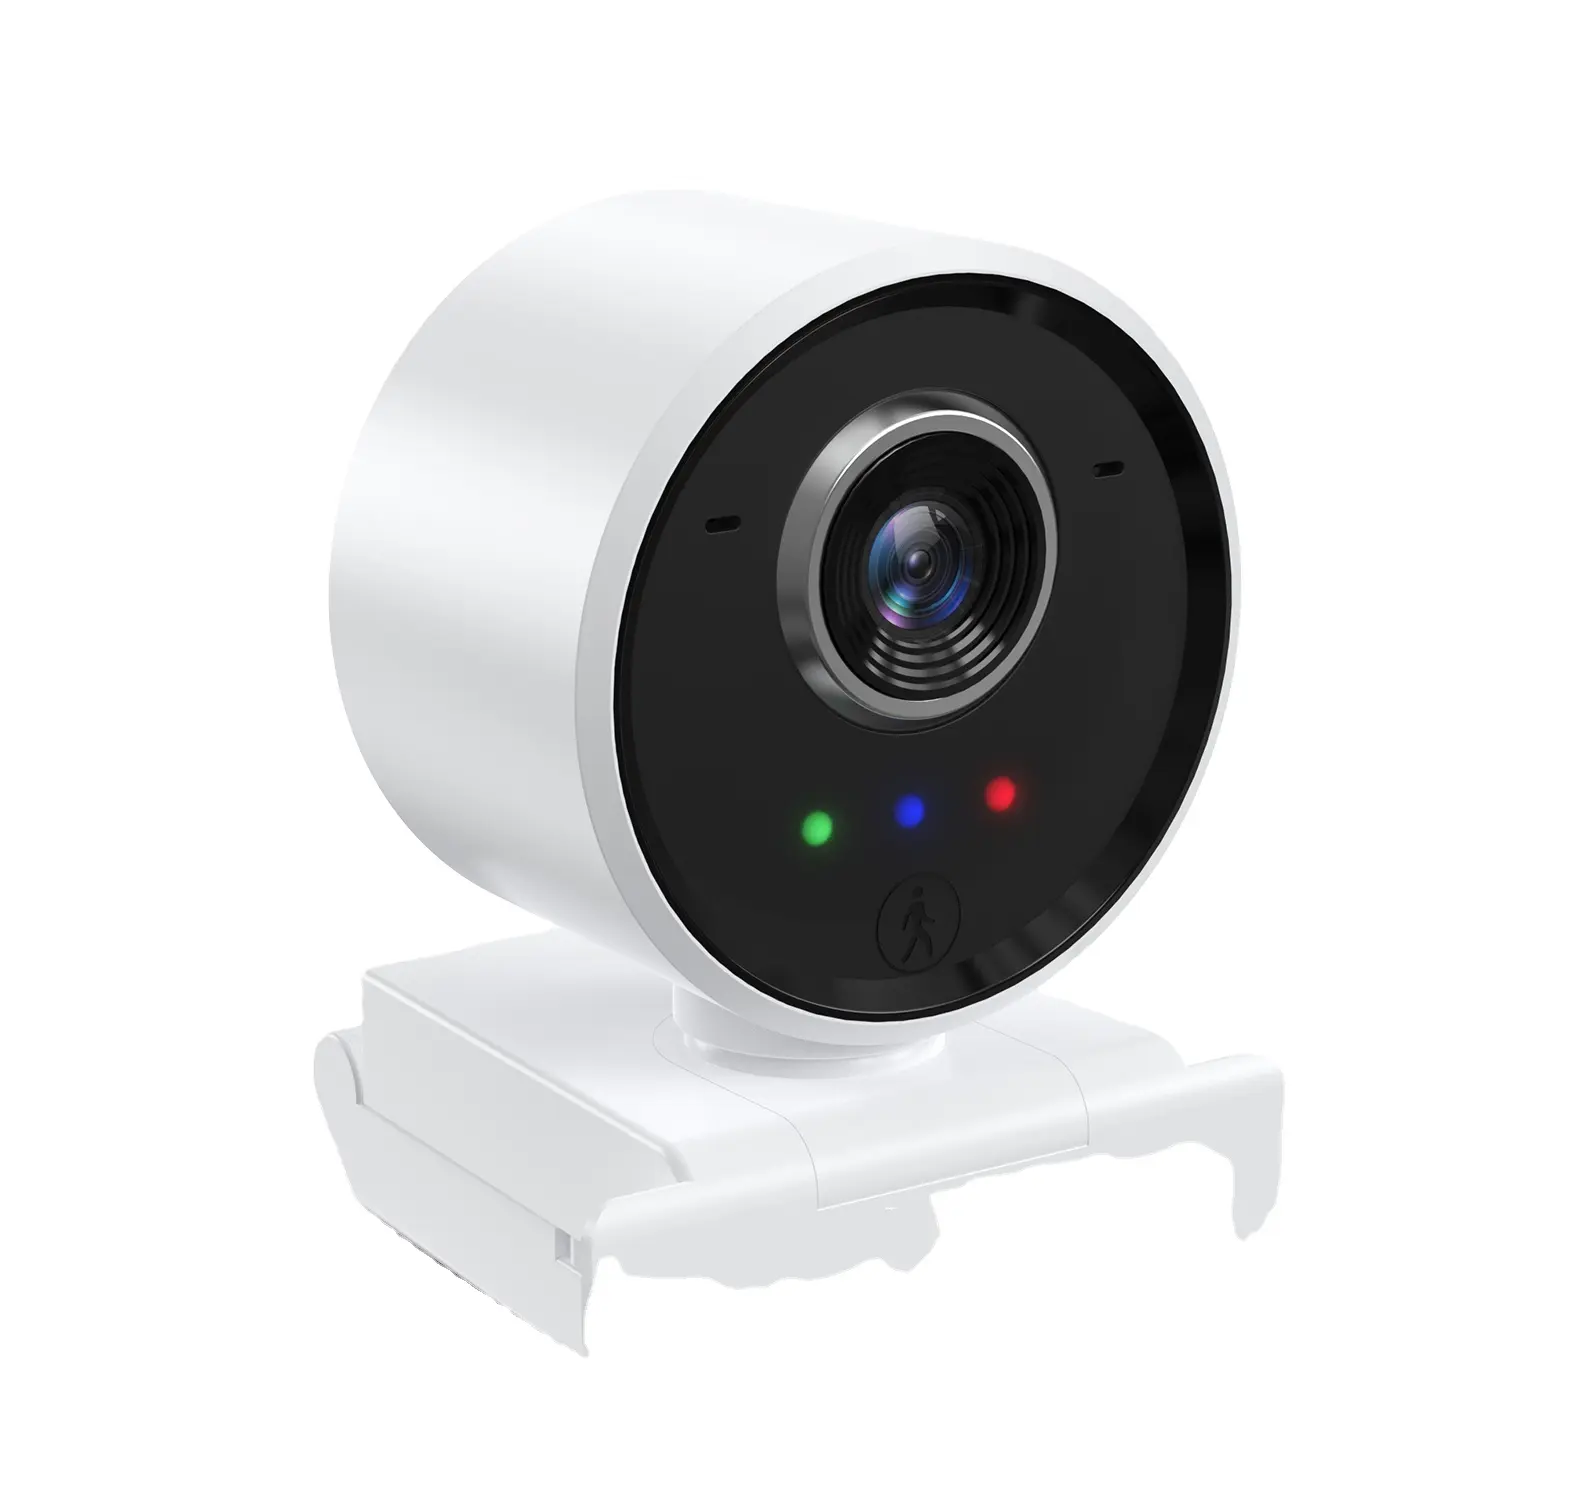 Innotronik WebCam 1080 Series Human tracking Autofocus Web Camera supporta vari Software di riunione Video con telecomando